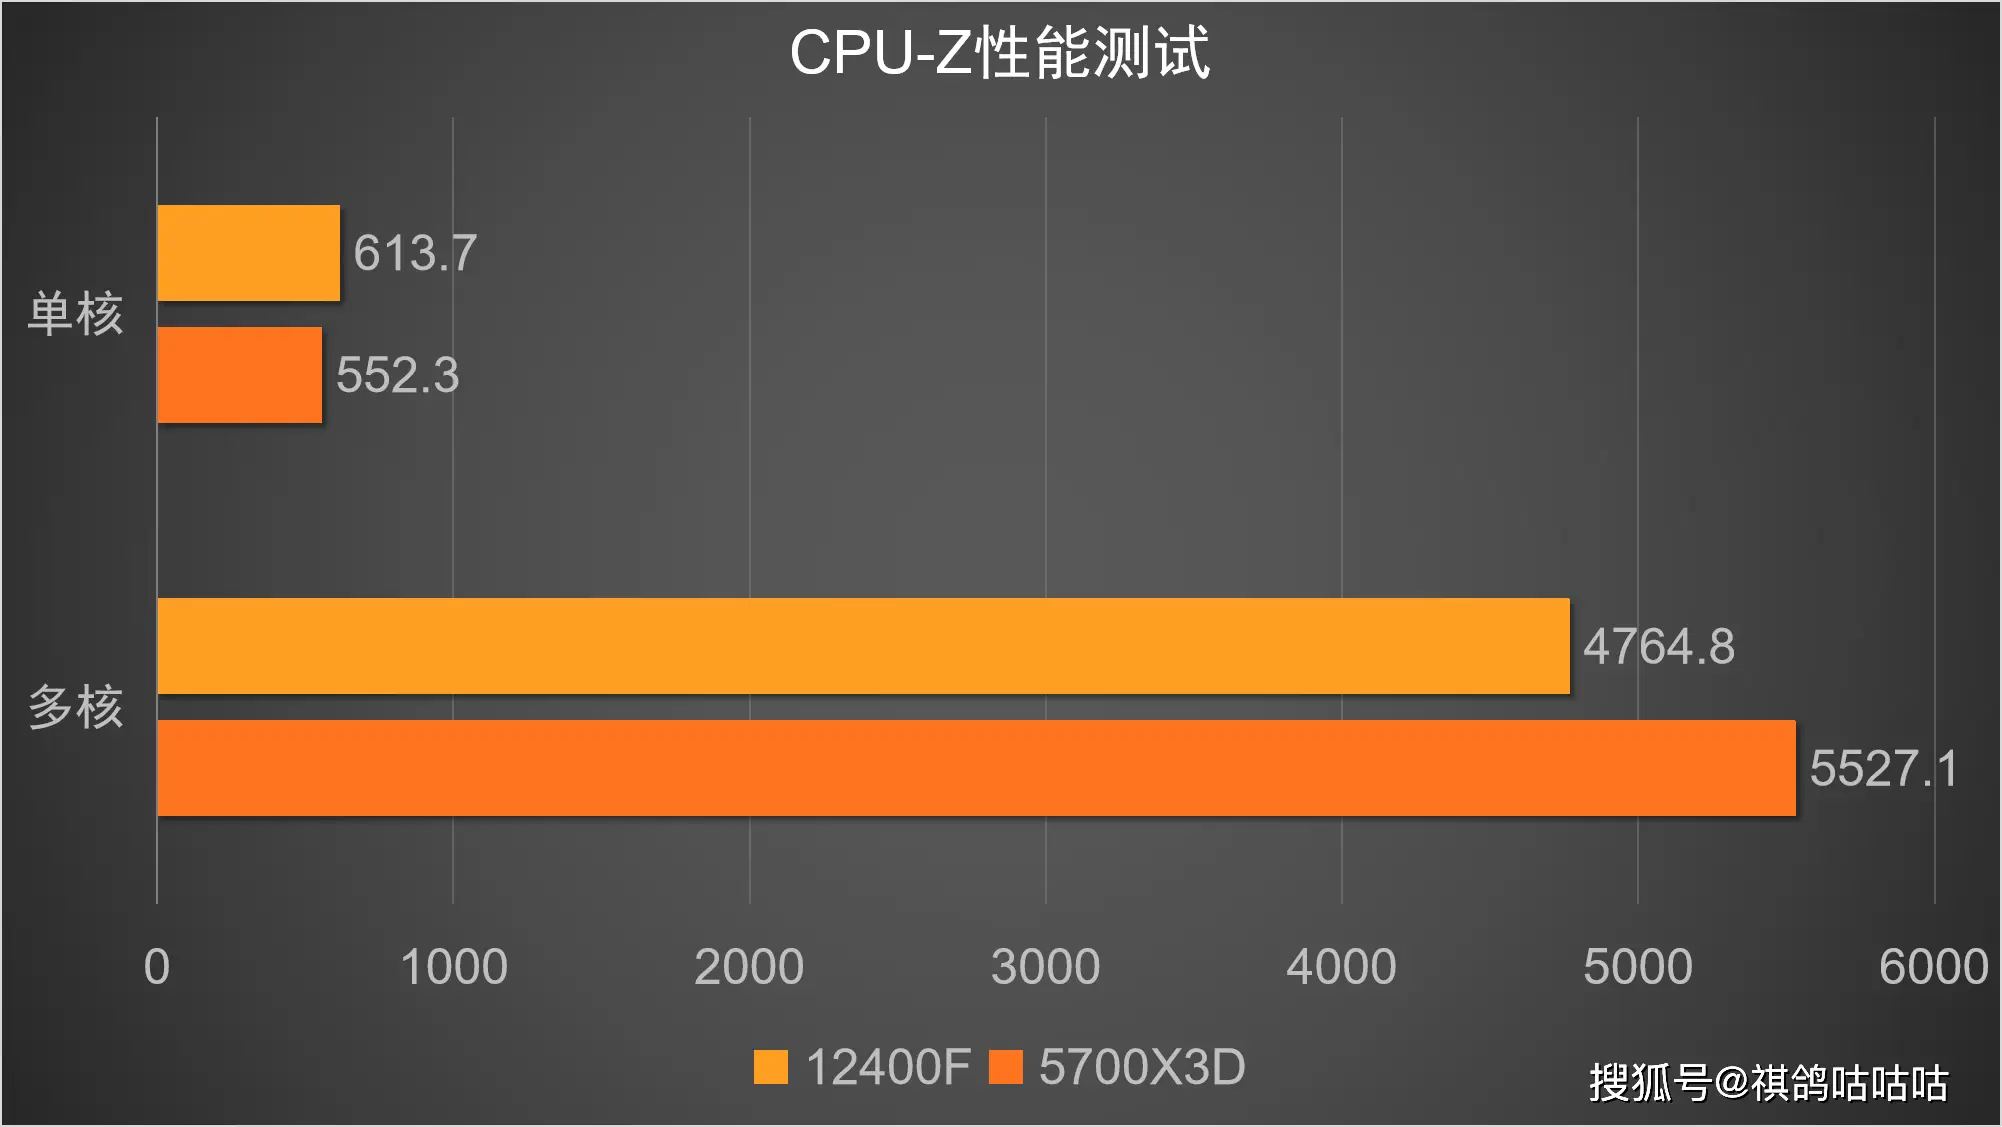 锐龙主板为何只支持 DDR4 内存？技术升级还是市场策略？  第5张